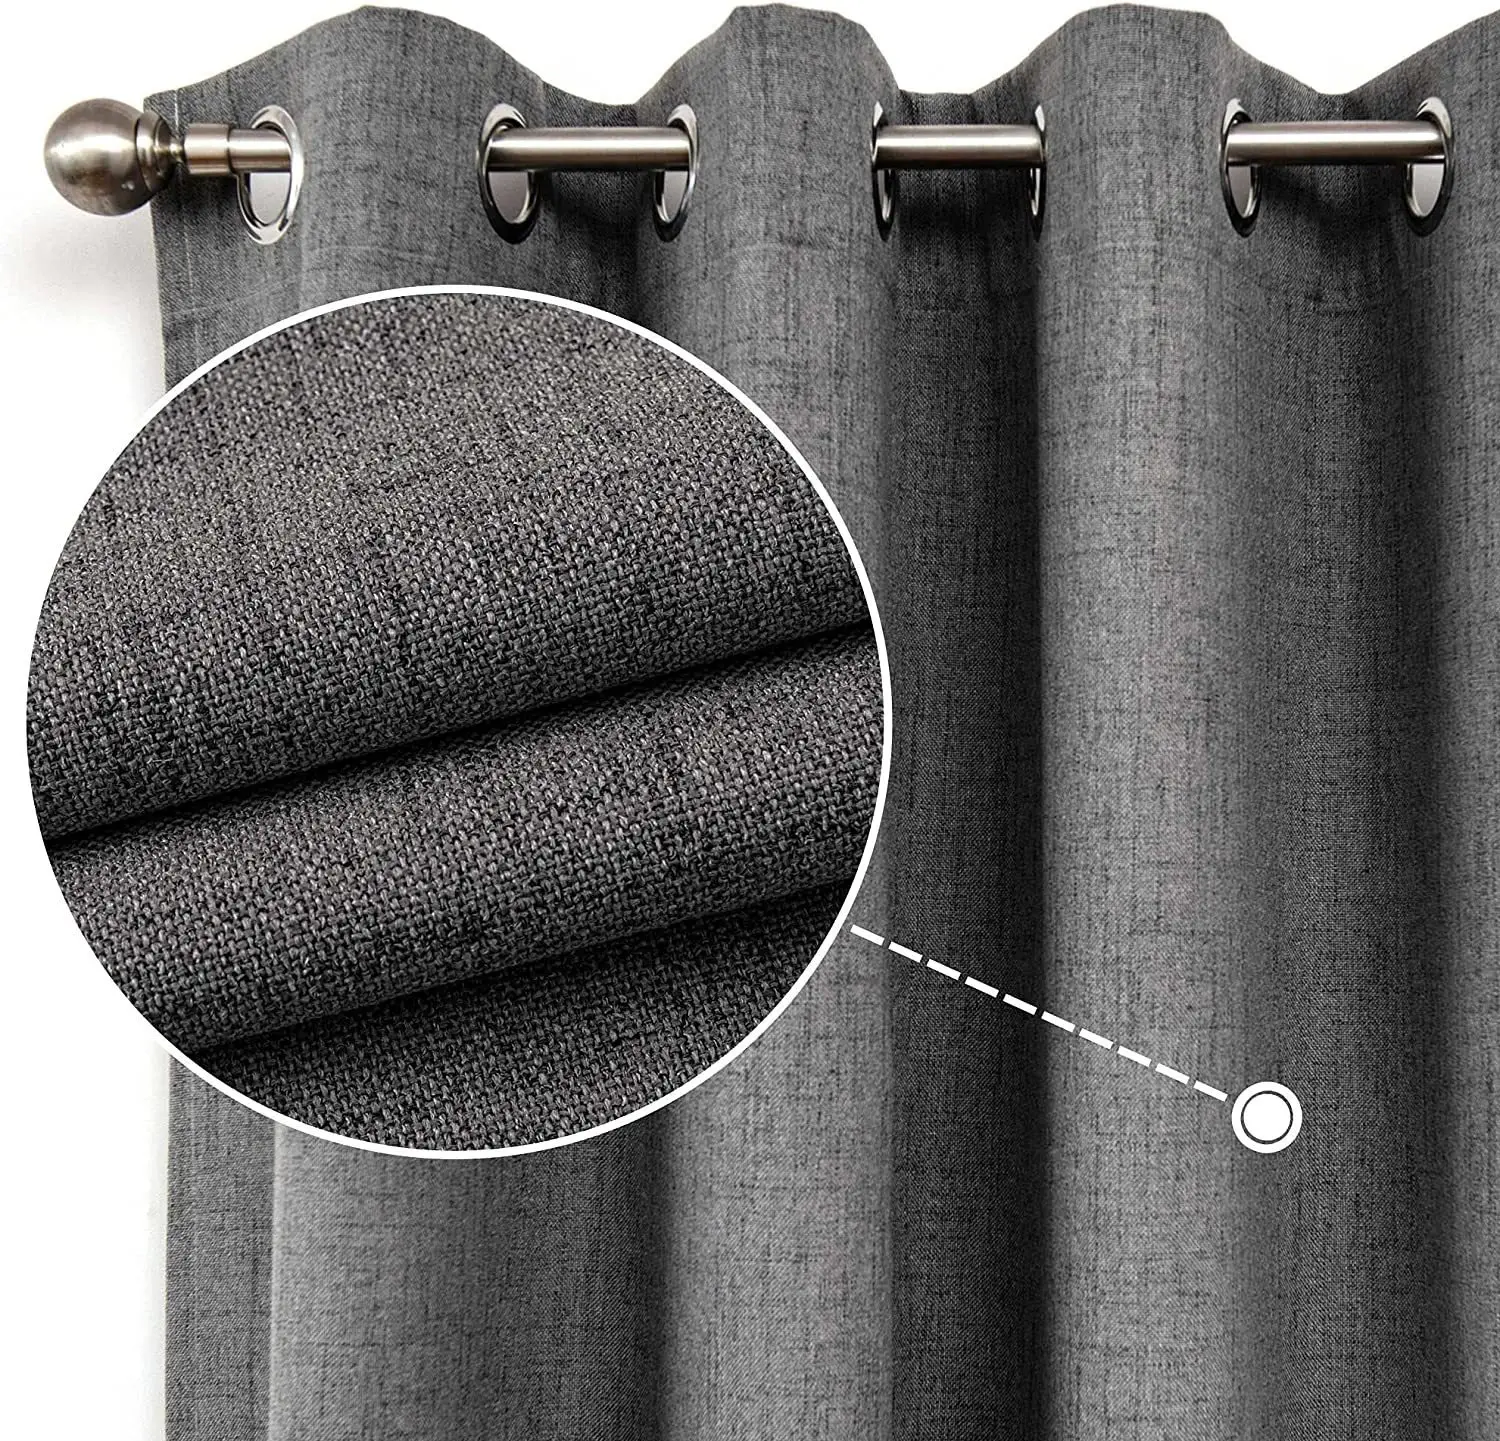 Individuelle amerikanische Polyester-Schlafzimmervorhänge in solider Farbe thermisch isolierte Verdunkelungsfenstervorhänge für das Wohnzimmer